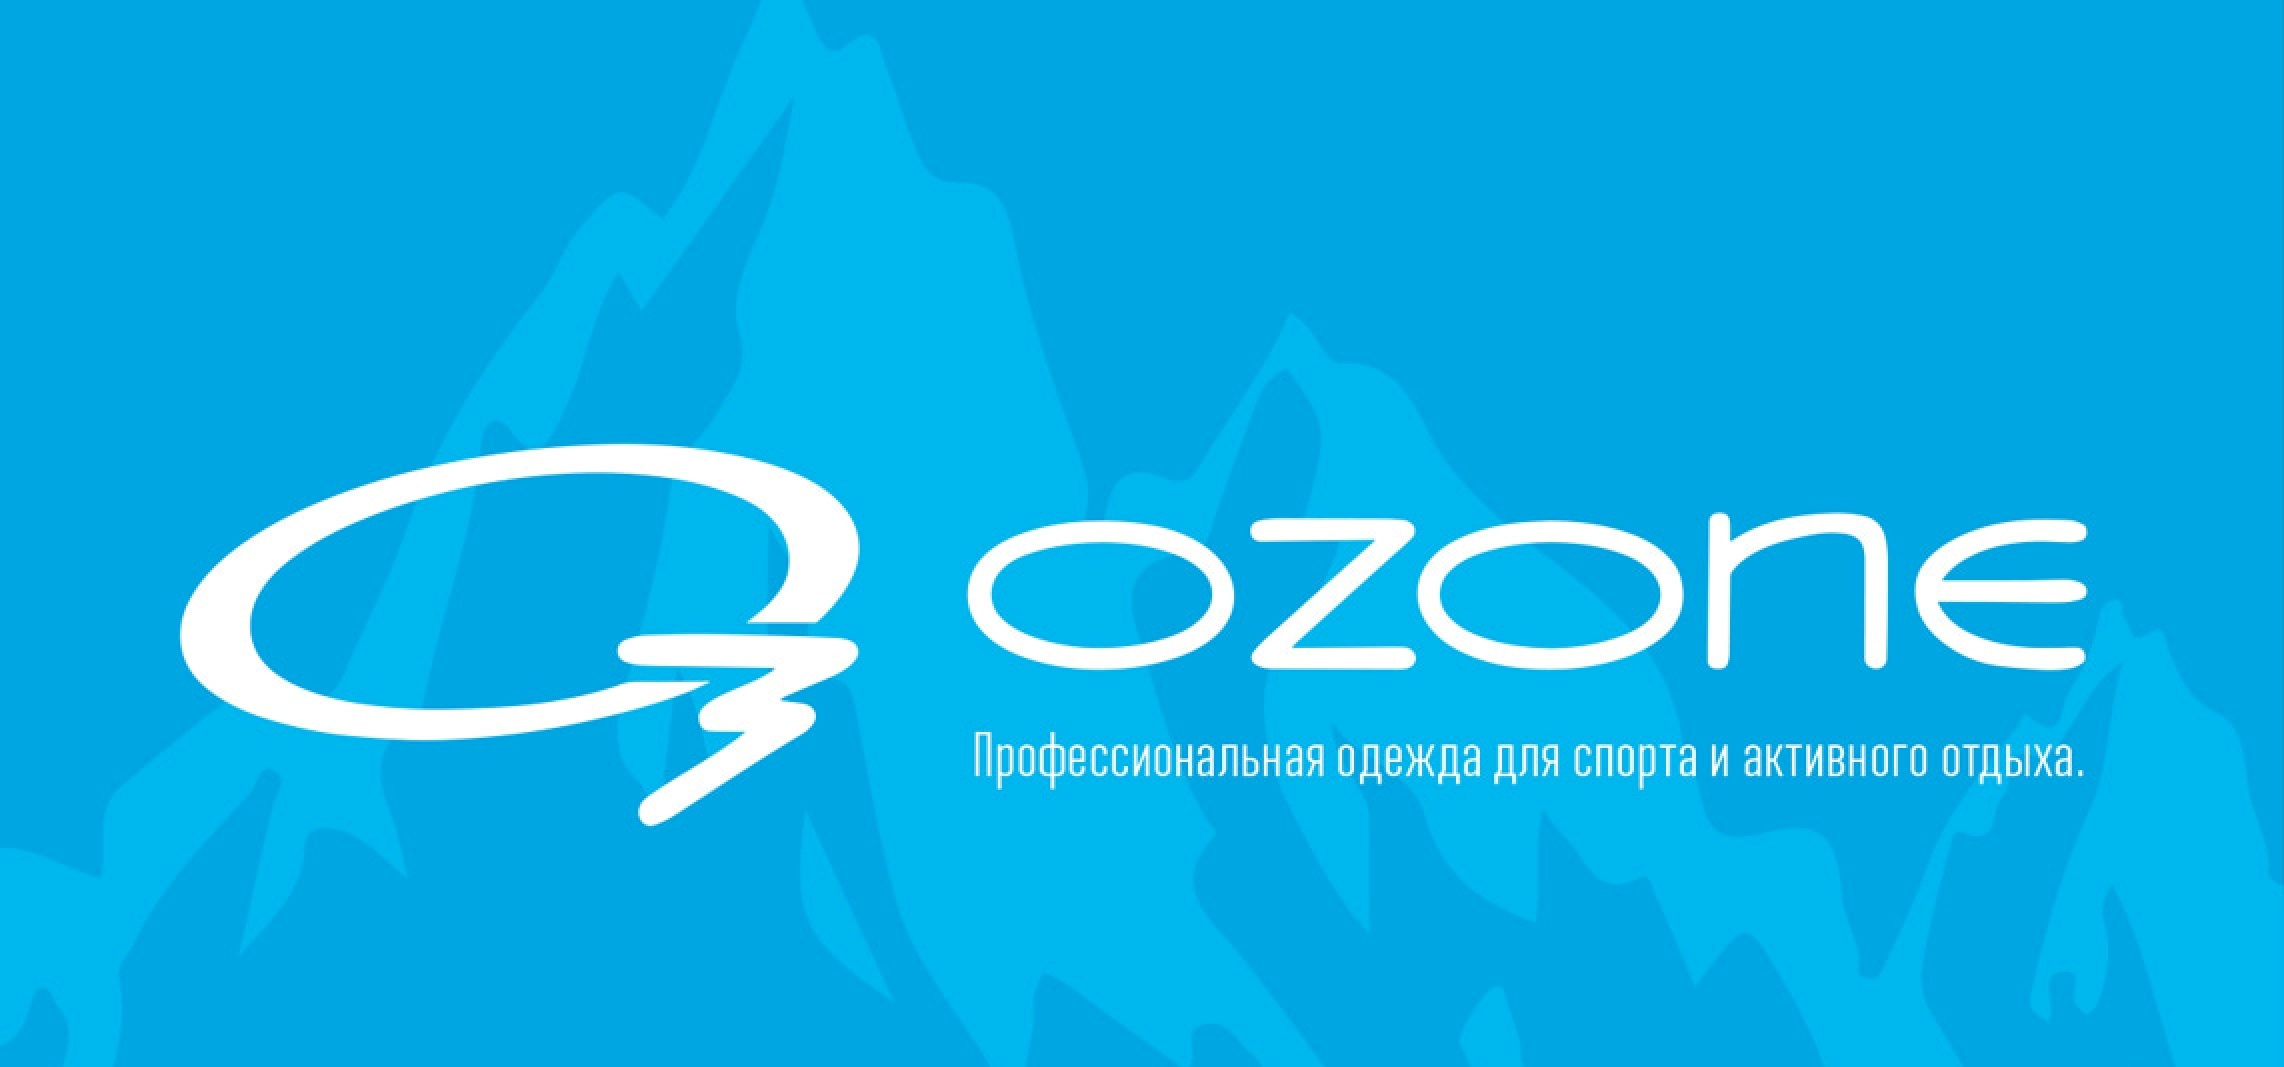 Озон ноябрьск. Озон о3. Озон одежда. Озон логотип. Озон 03.